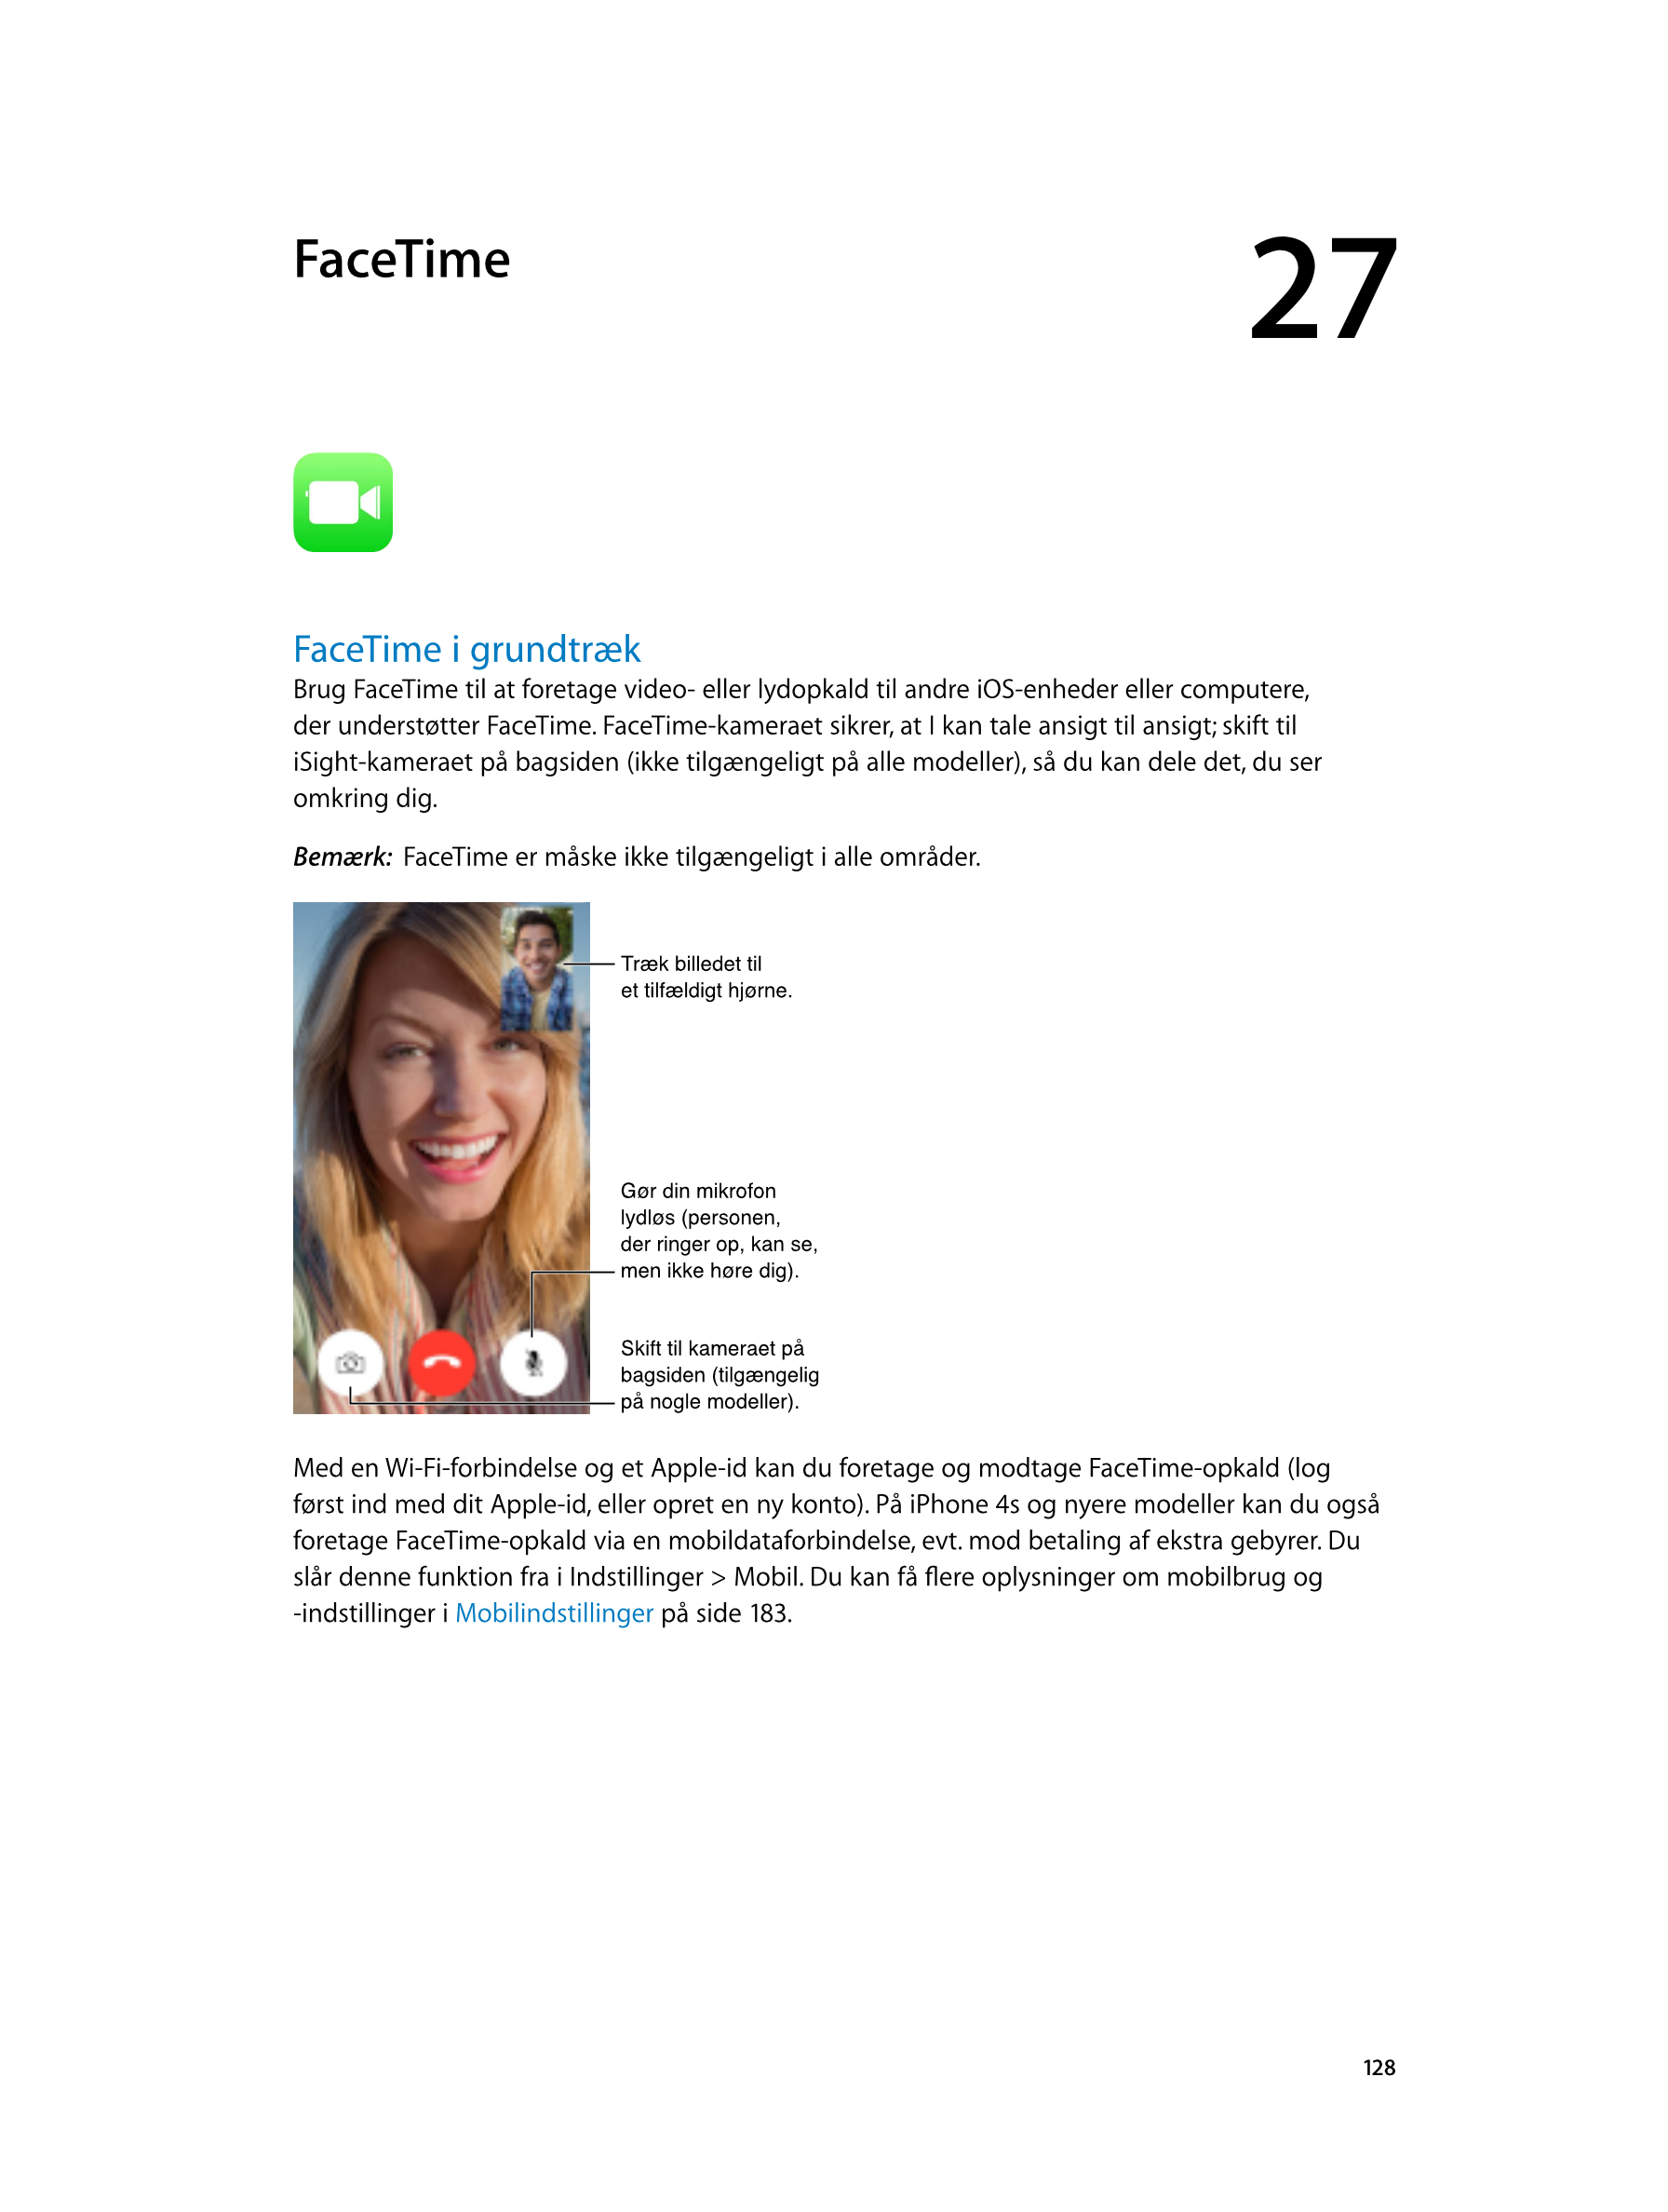   FaceTime 27
FaceTime i grundtræk
Brug FaceTime til at foretage video- eller lydopkald til andre iOS-enheder eller computere, 
